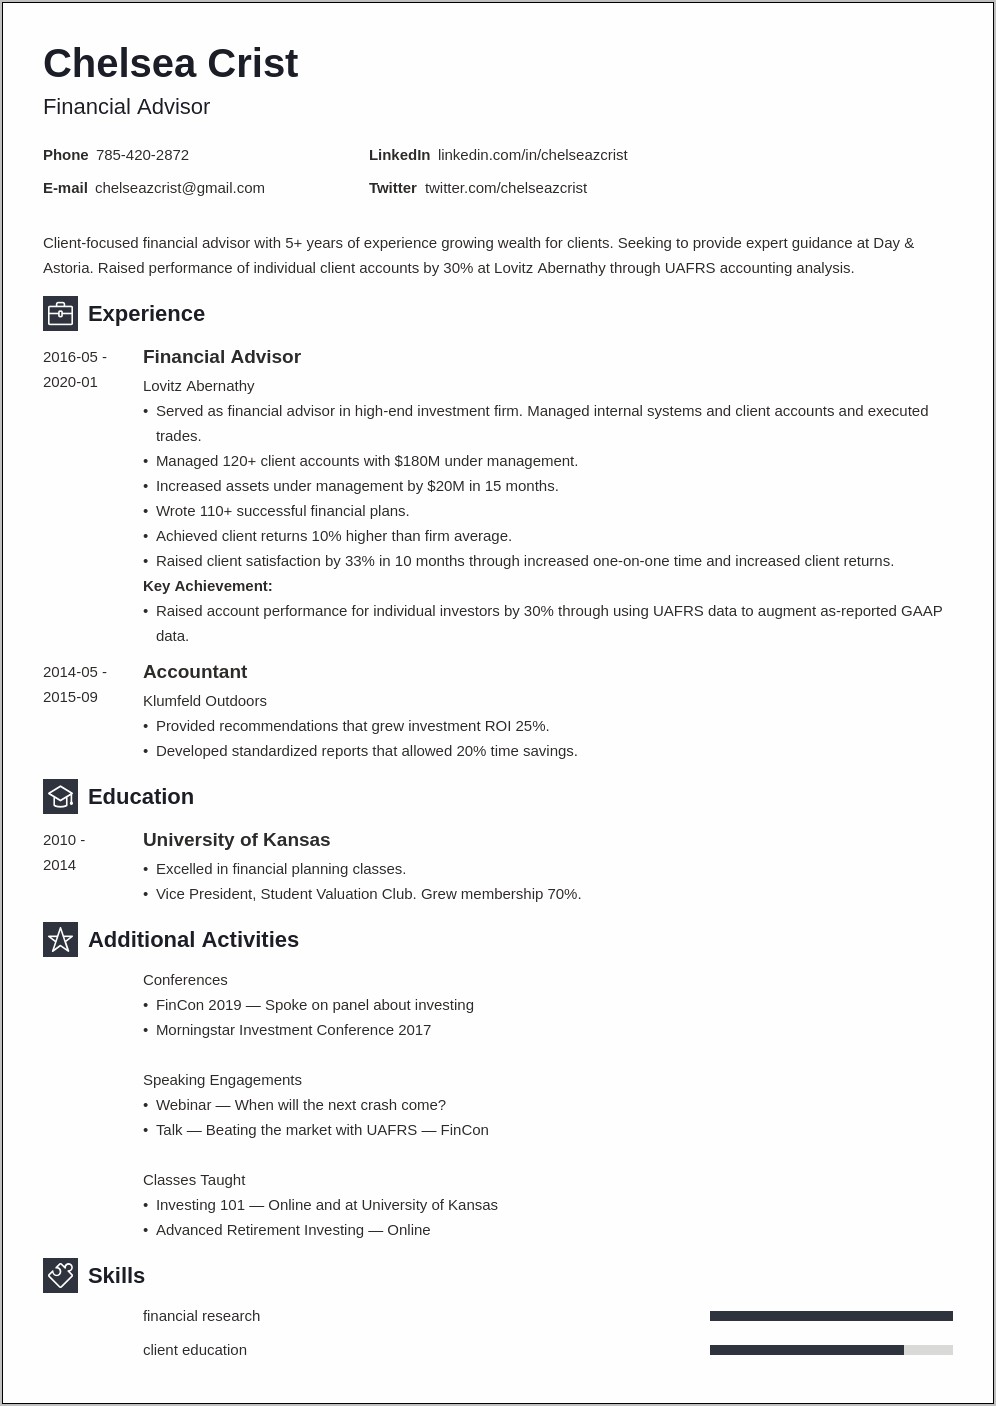 Skills Section Of Resume For Financial Advisor